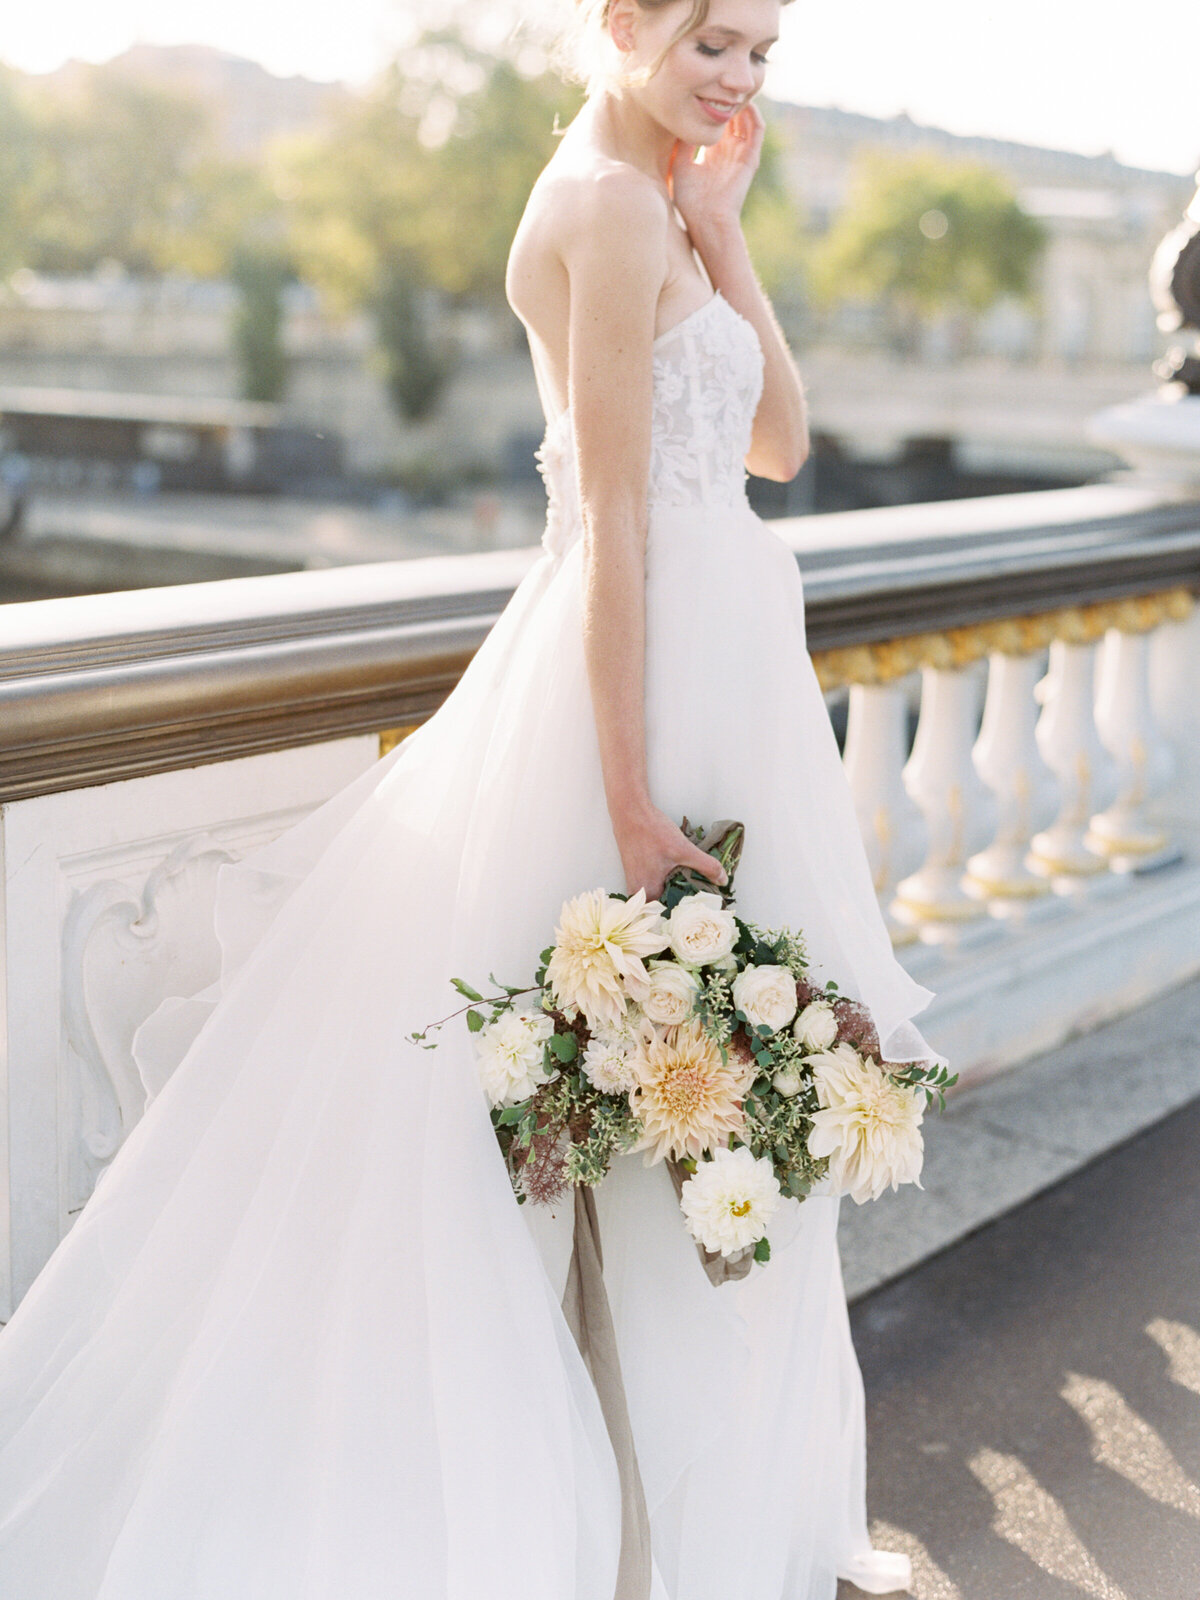 petit-palais-elopement-paris-wedding-photographer-mackenzie-reiter-photography-pont-alexandre-bridge-paris-france-22